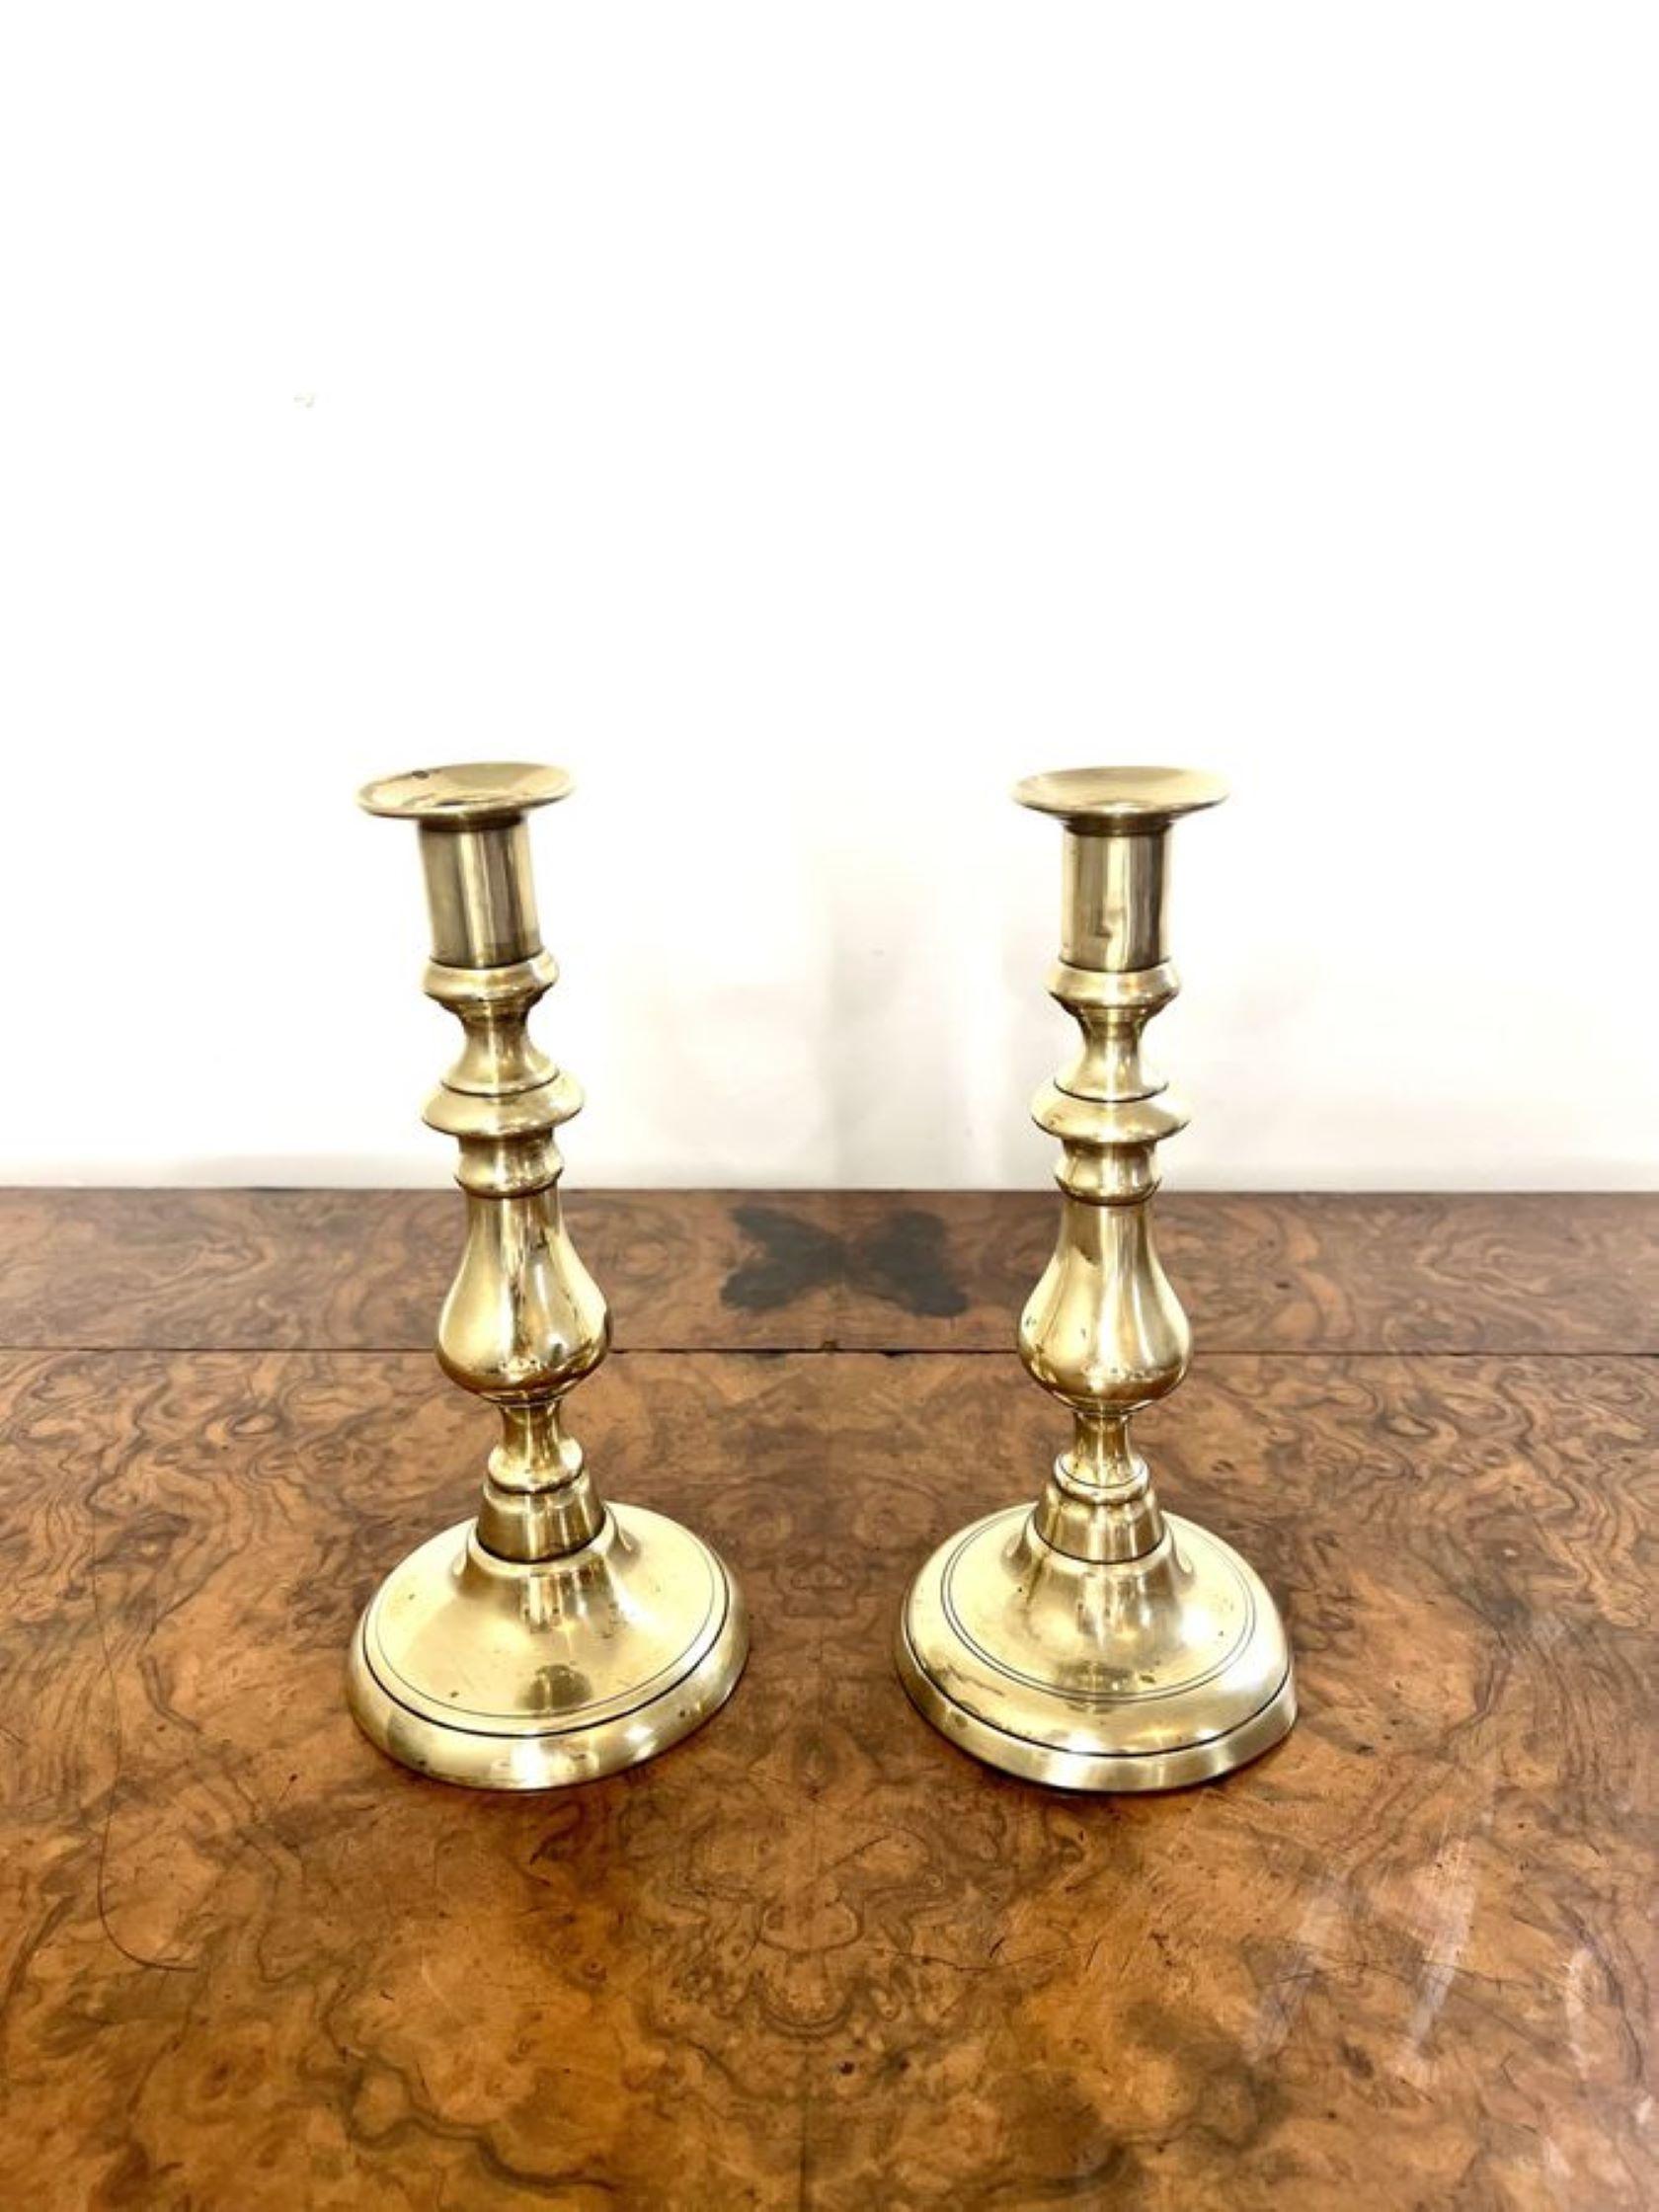 Atemberaubende Paar antike viktorianische Messing-Kerzenhalter mit einem eleganten Paar Messing-Kerzenhalter auf kreisförmigen Basen erhöht 

D. 1880